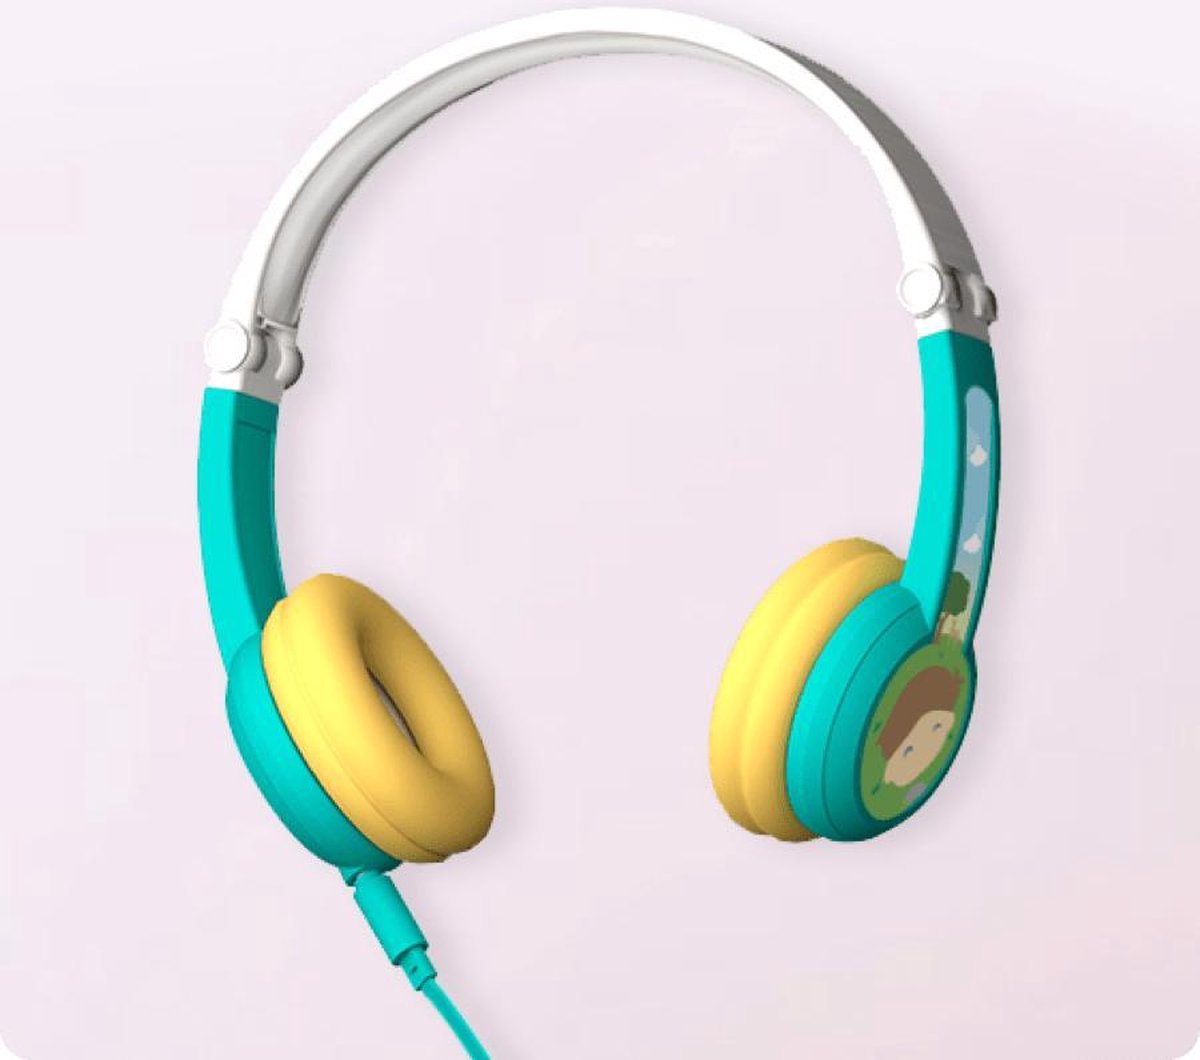 Headset Octave - Speciaal voor kinderen - Veilige Audio - vanaf 3 jaar